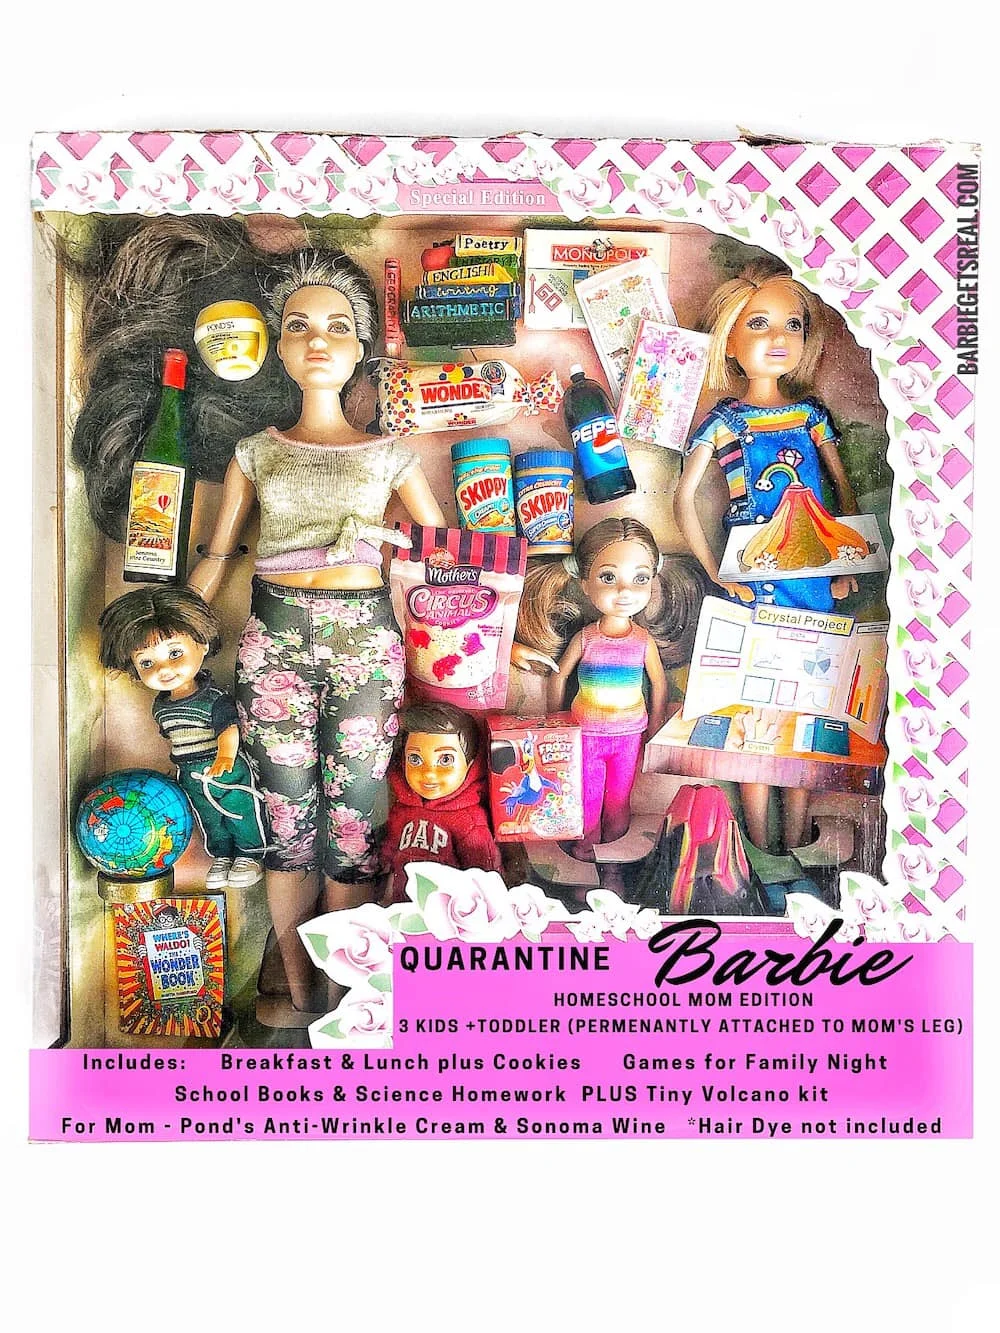 Женщина создала реалистичных кукол Барби, сидящих на карантине – такими их еще не видели - фото 479748